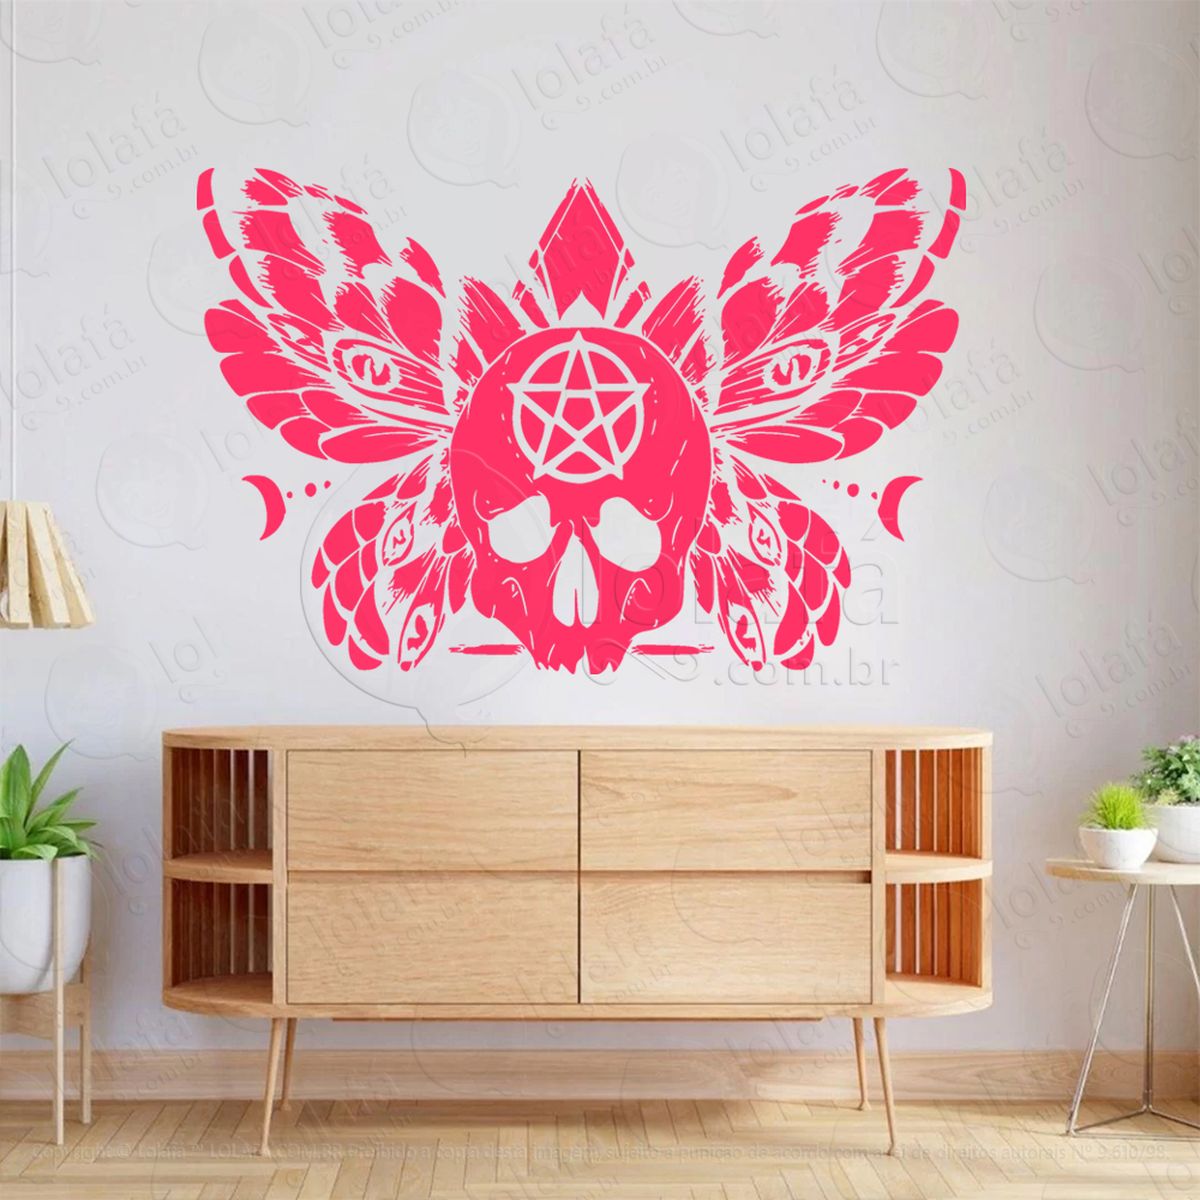 borboleta mágica da wicca magic butterfly adesivo de parede decorativo para casa, sala, quarto, vidro e altar ocultista - mod:29